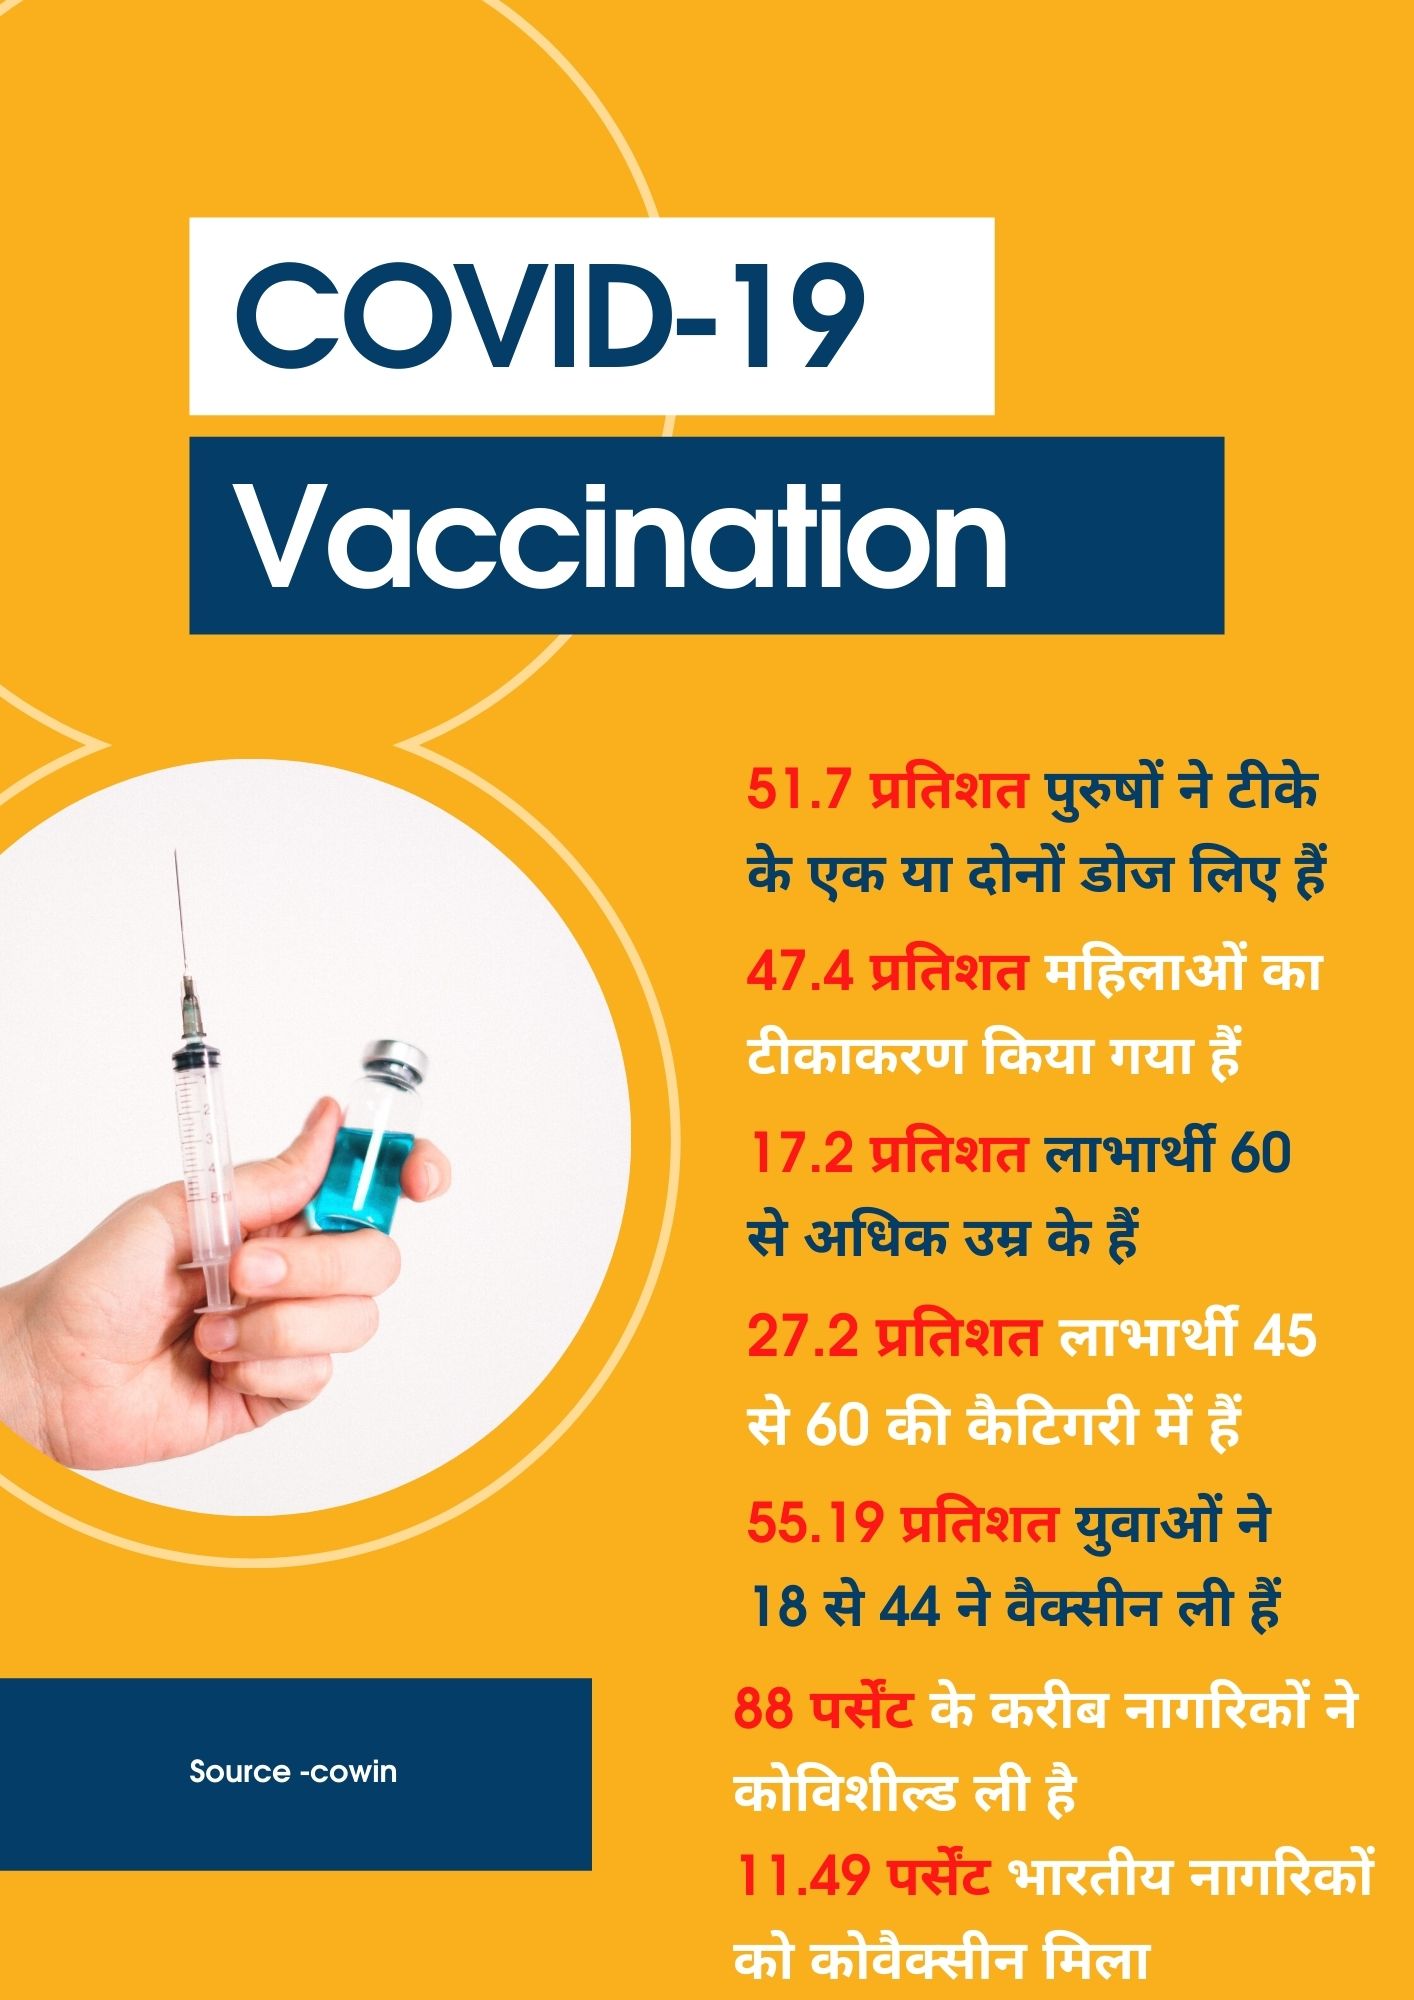 100 crore covid vaccination